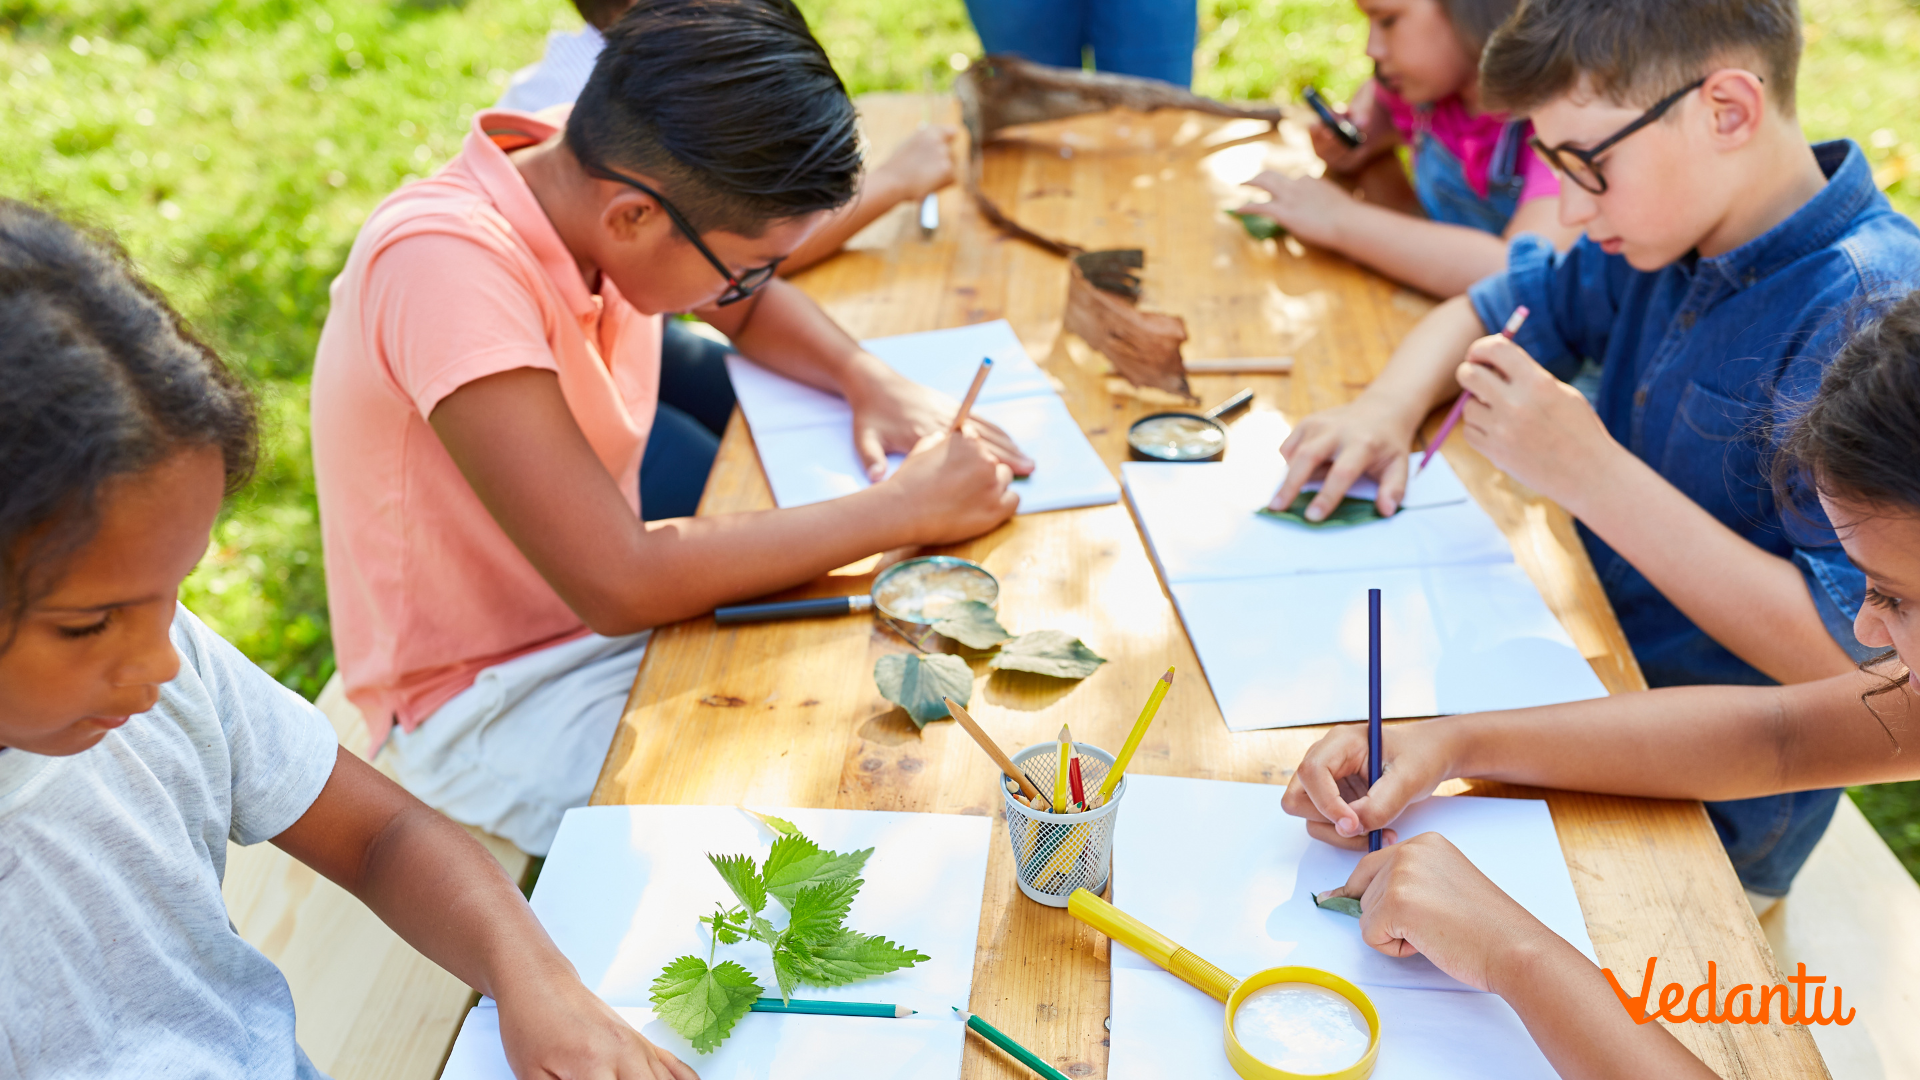 Top 9 Summer Science Camp Activities for Children